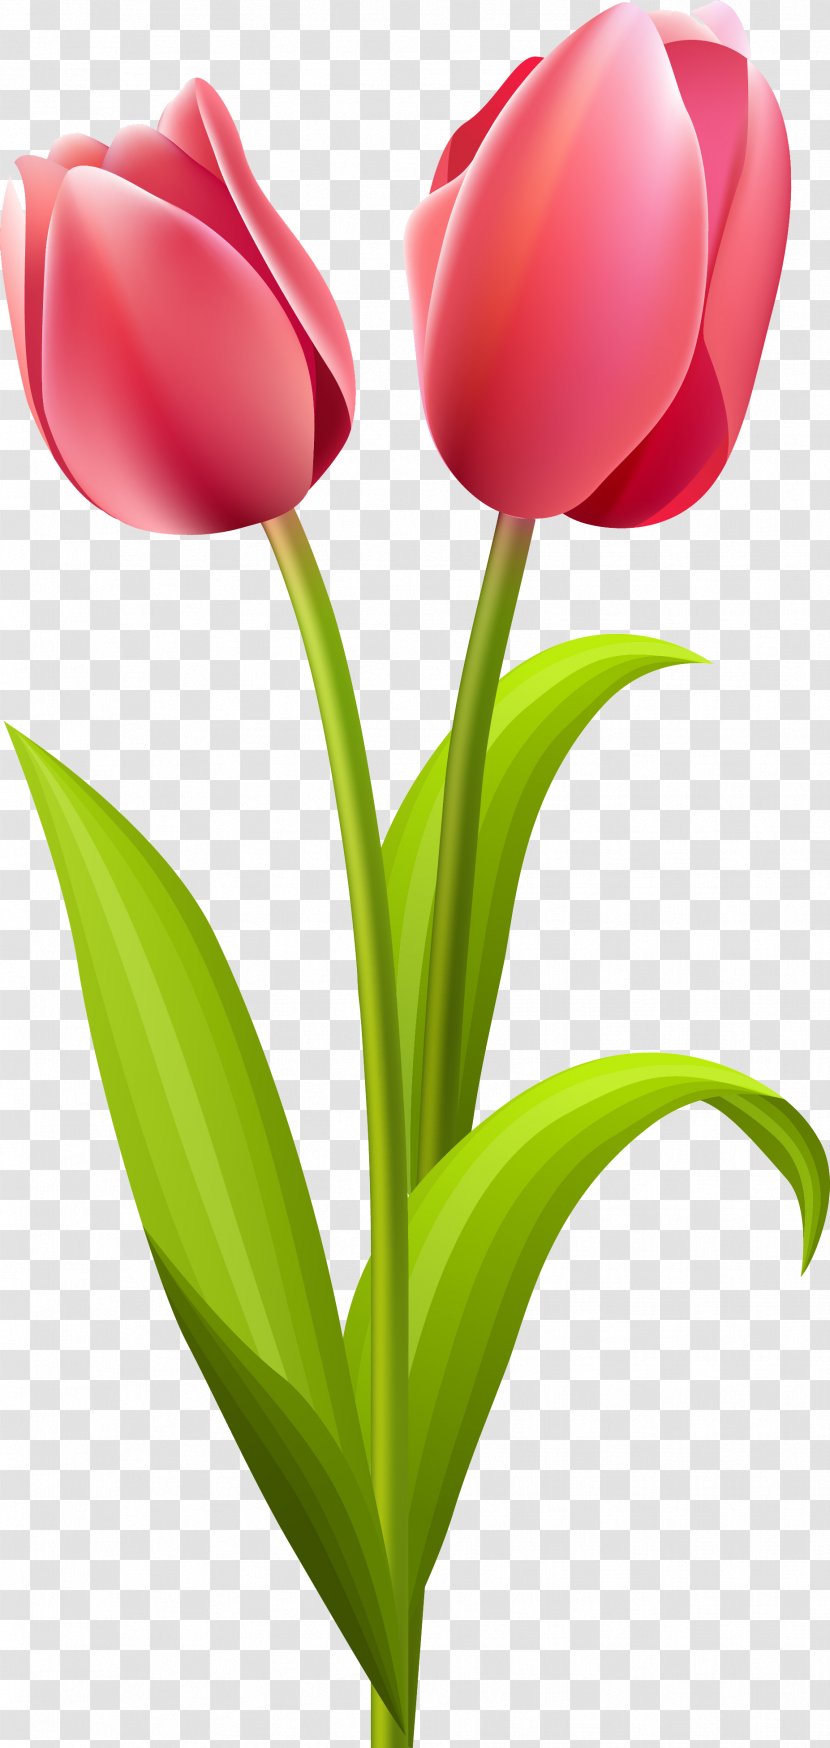 Tulip Flower Bouquet Clip Art - Floral Design Transparent PNG